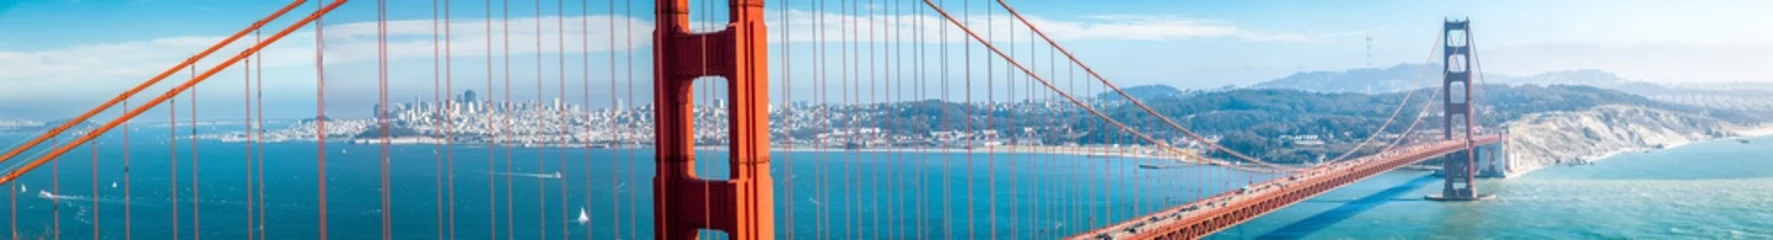 Fotobehang Golden Gate Bridge-panorama met de horizon van San Francisco in de zomer, Californië, de V.S © JFL Photography